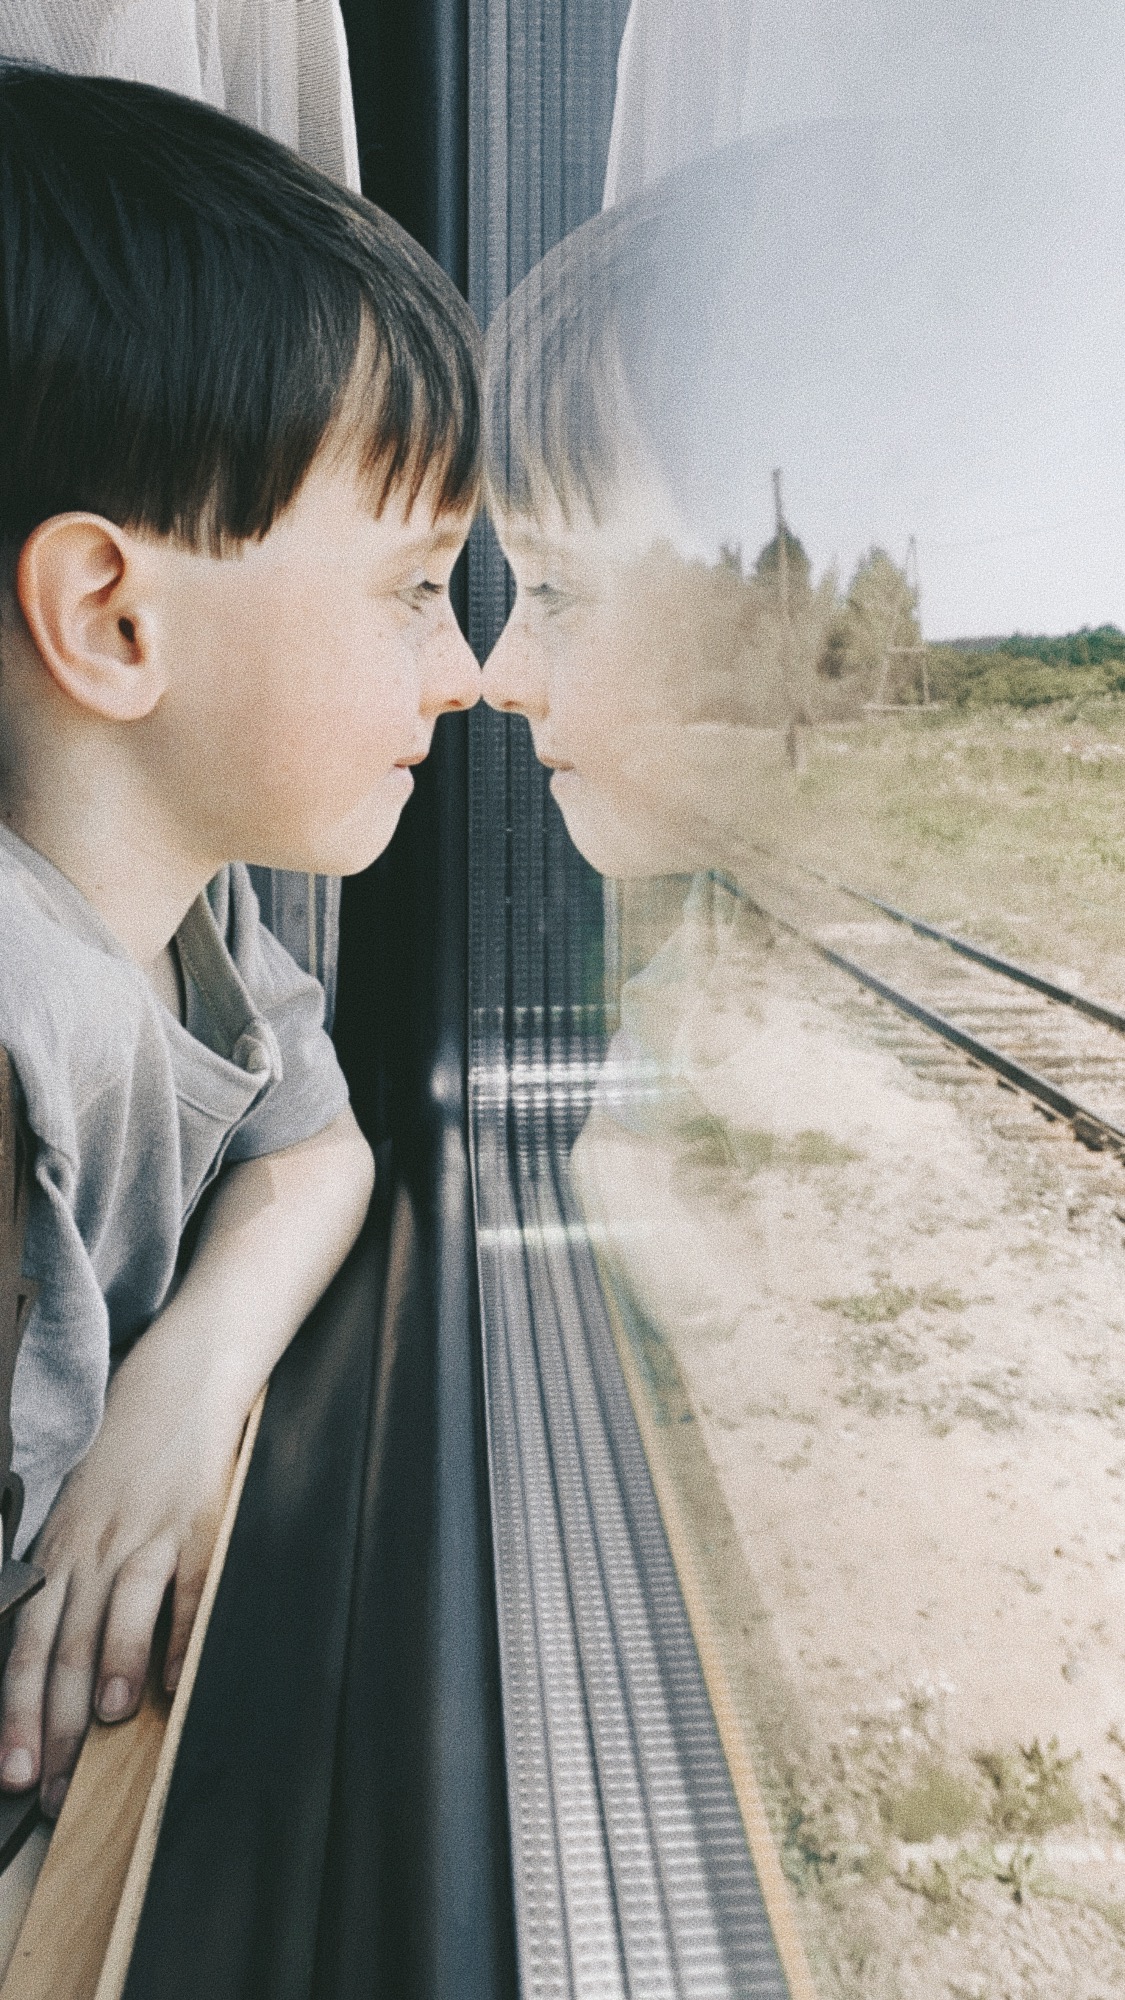 мальчик смотрит в окно в поезде